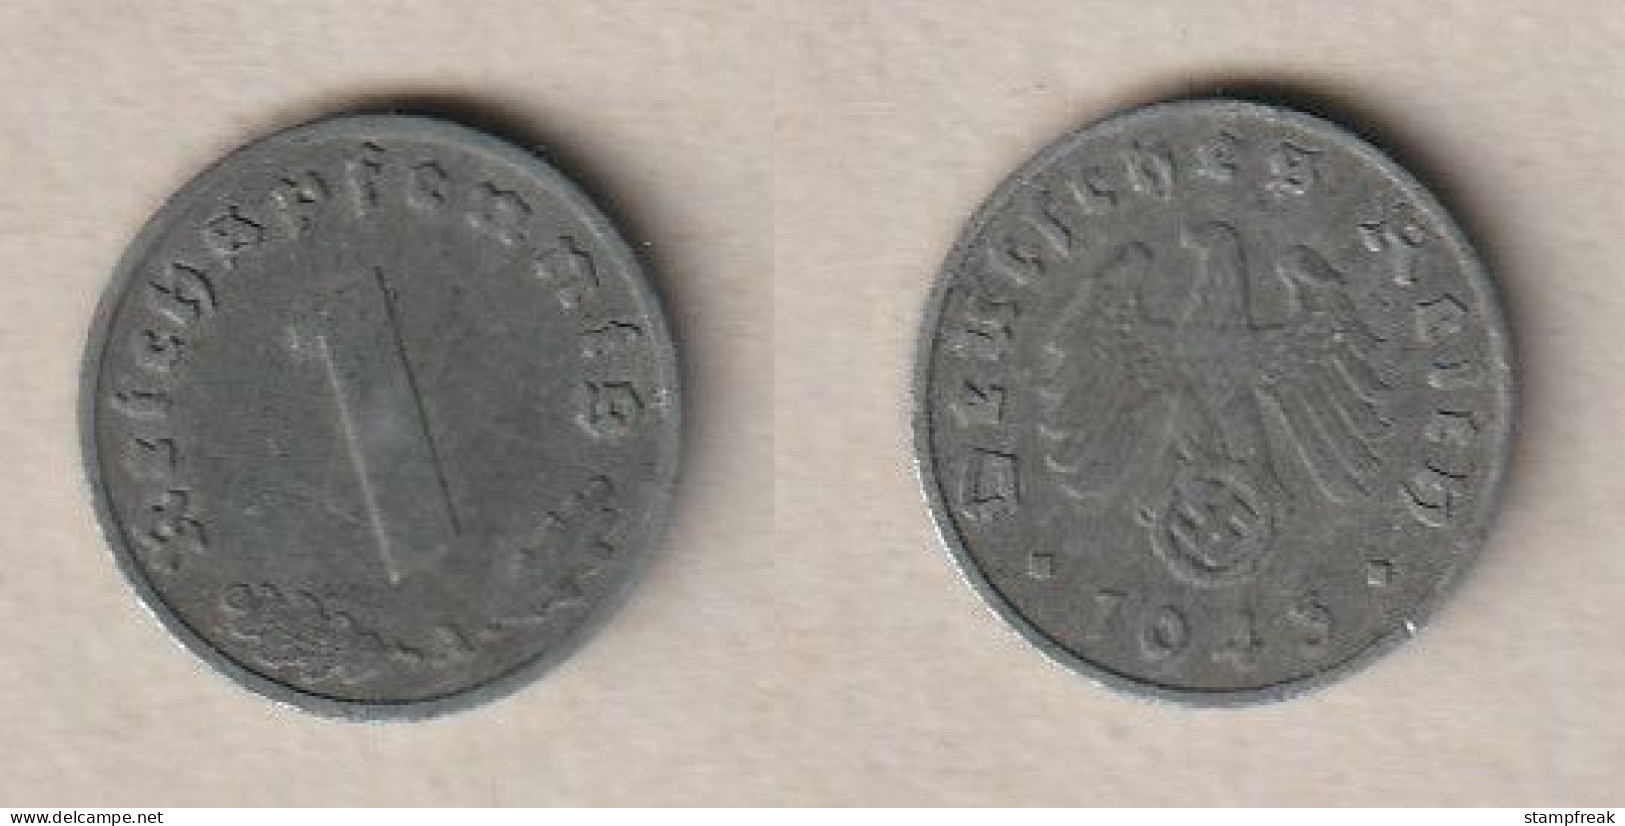 00862) Deutschland, 3. Reich, 1 Reichspfennig 1943A - 1 Reichspfennig